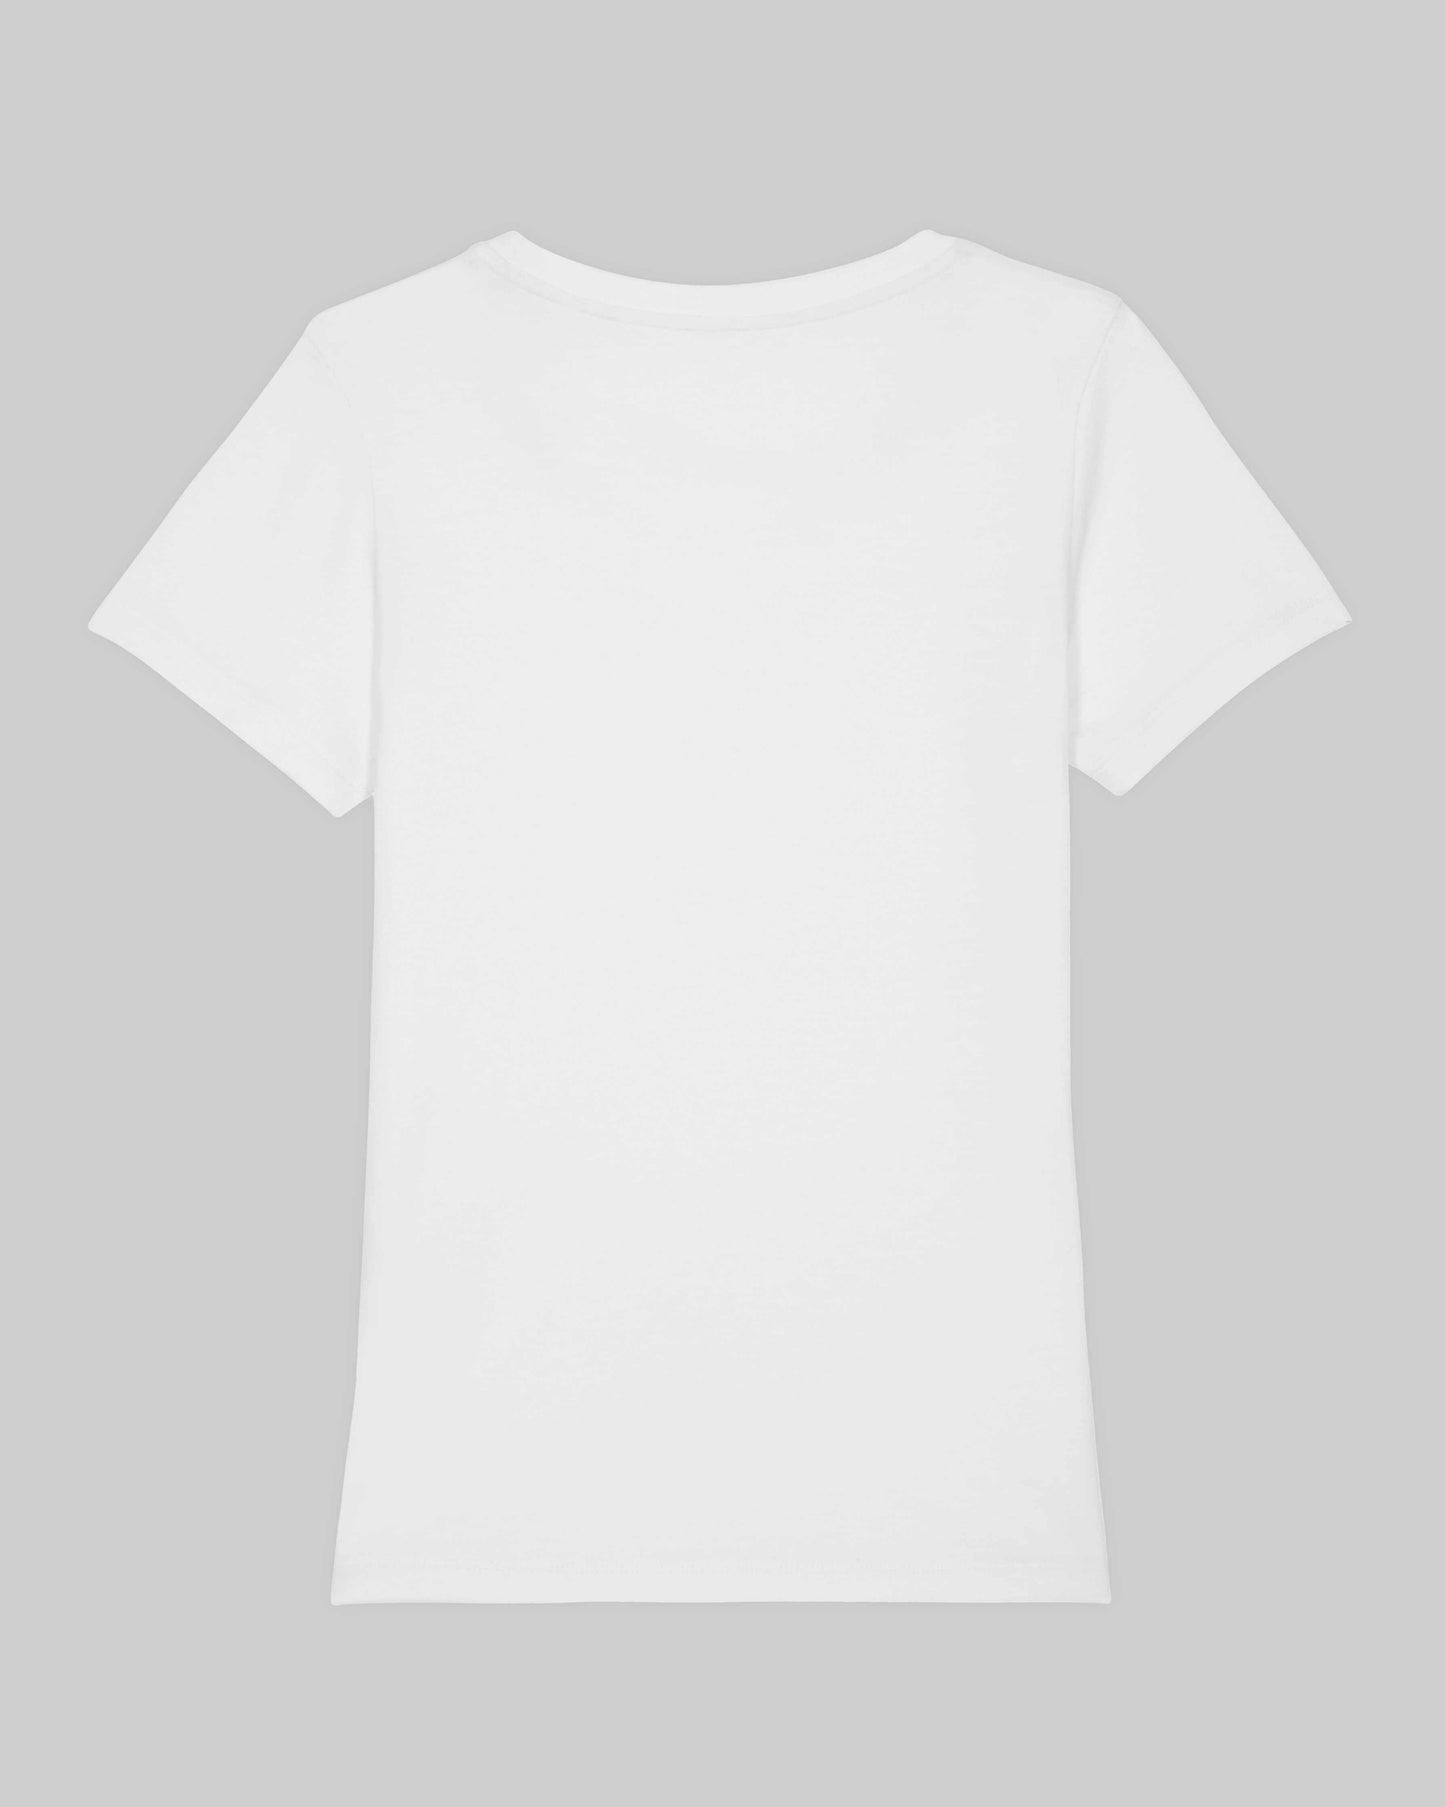 EINHORST® Organic Shirt tailliert in "Weiß" mit dem Motiv "lgbtq+ Regenbogen" in der Kombination bunter Regenbogen mit schwarzer Schrift, Bild von Shirt von hinten